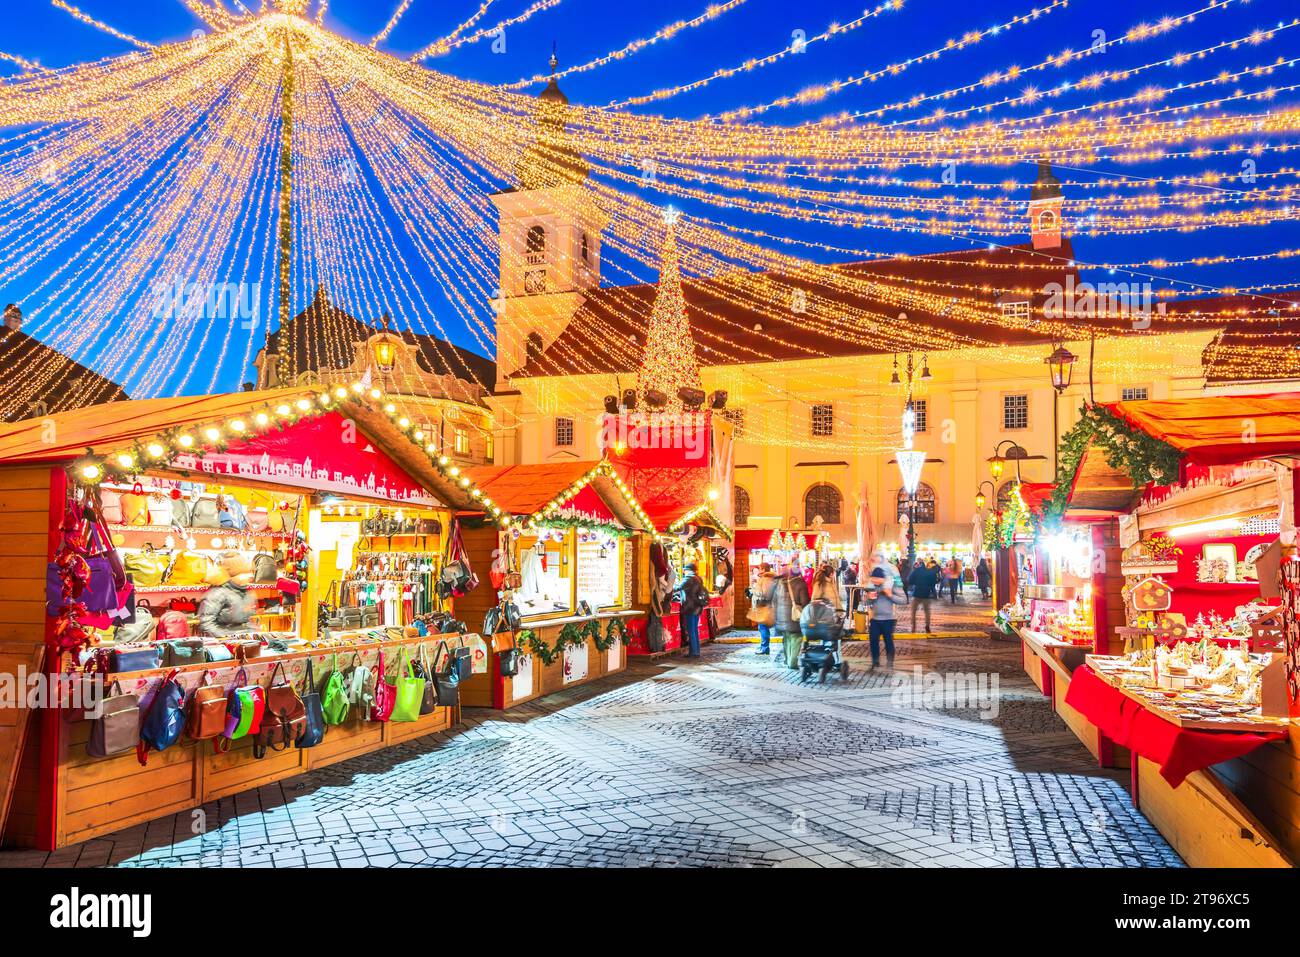 Sibiu, Rumänien. Nachtbild mit Weihnachtsmarkt, mittelalterlicher Innenstadt von Siebenbürgen, berühmter europäischer Weihnachtsmarkt. Stockfoto